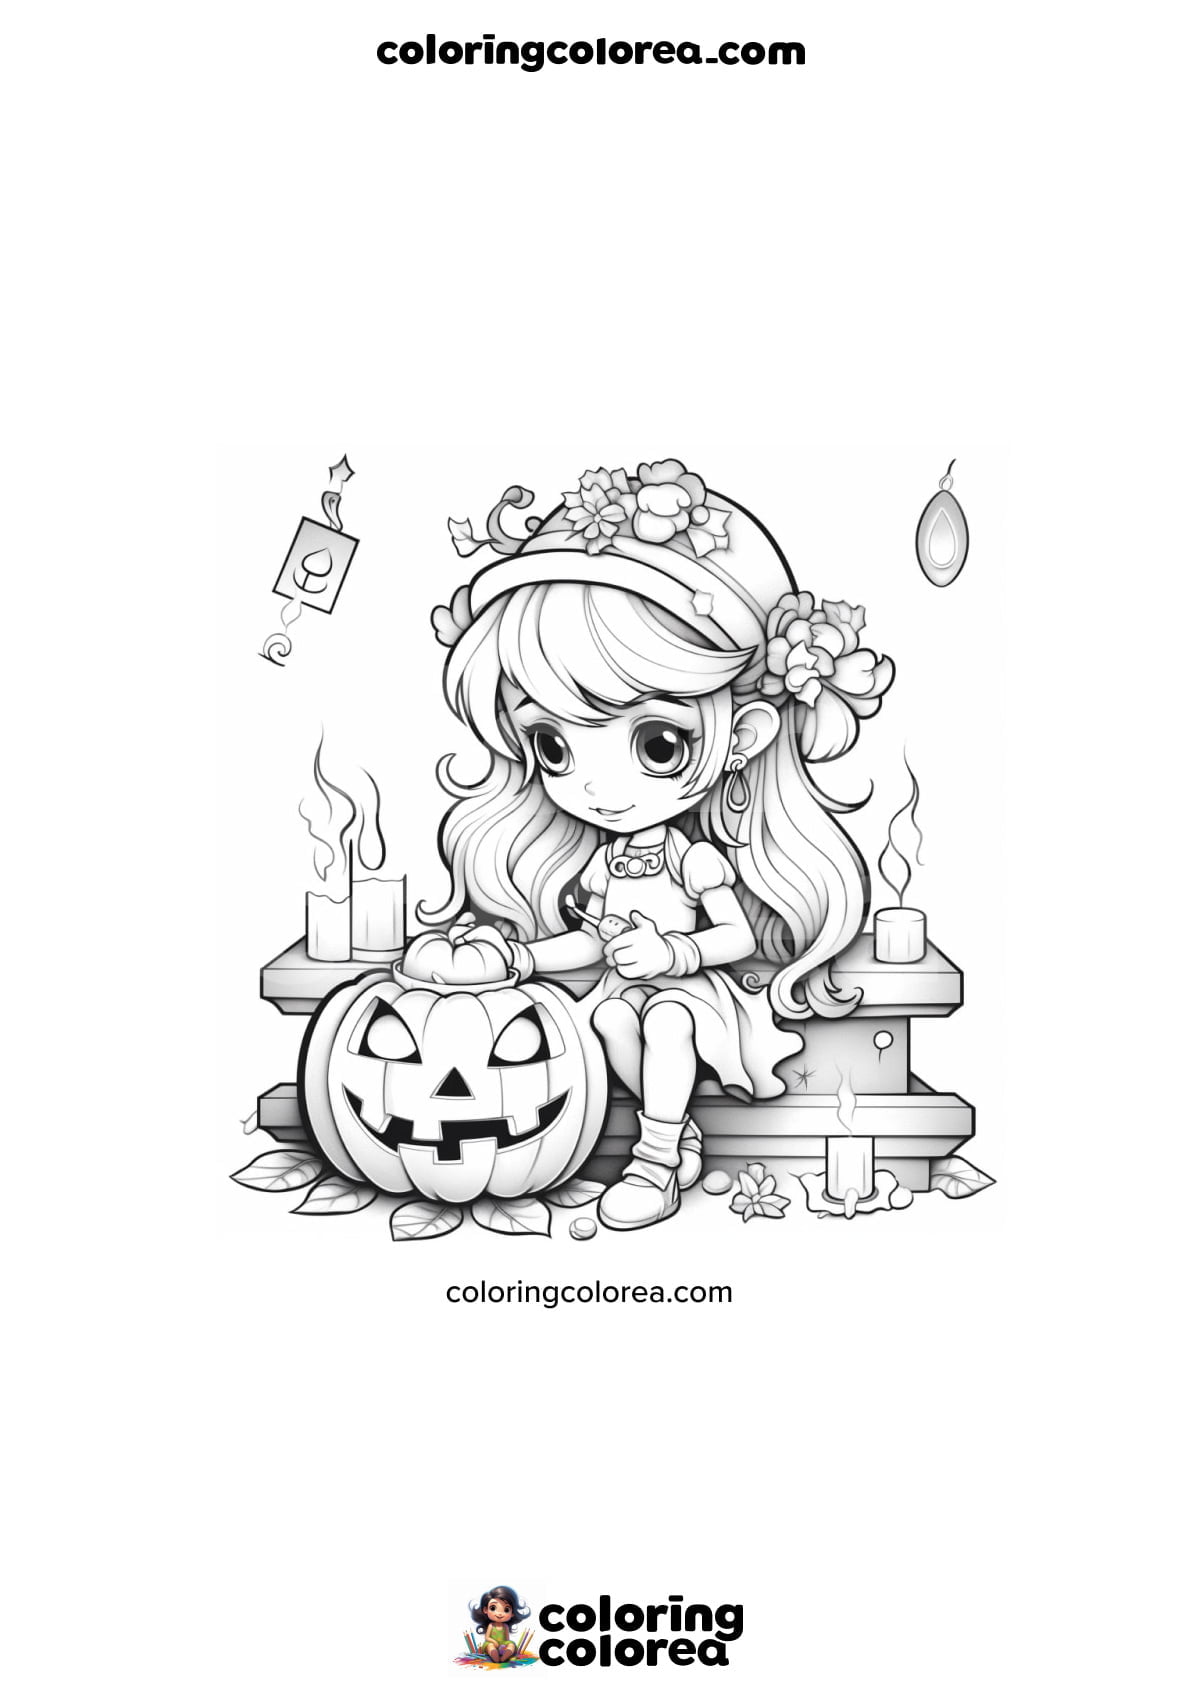 Dibujo para colorear de una niña decorando una calabaza de Halloween